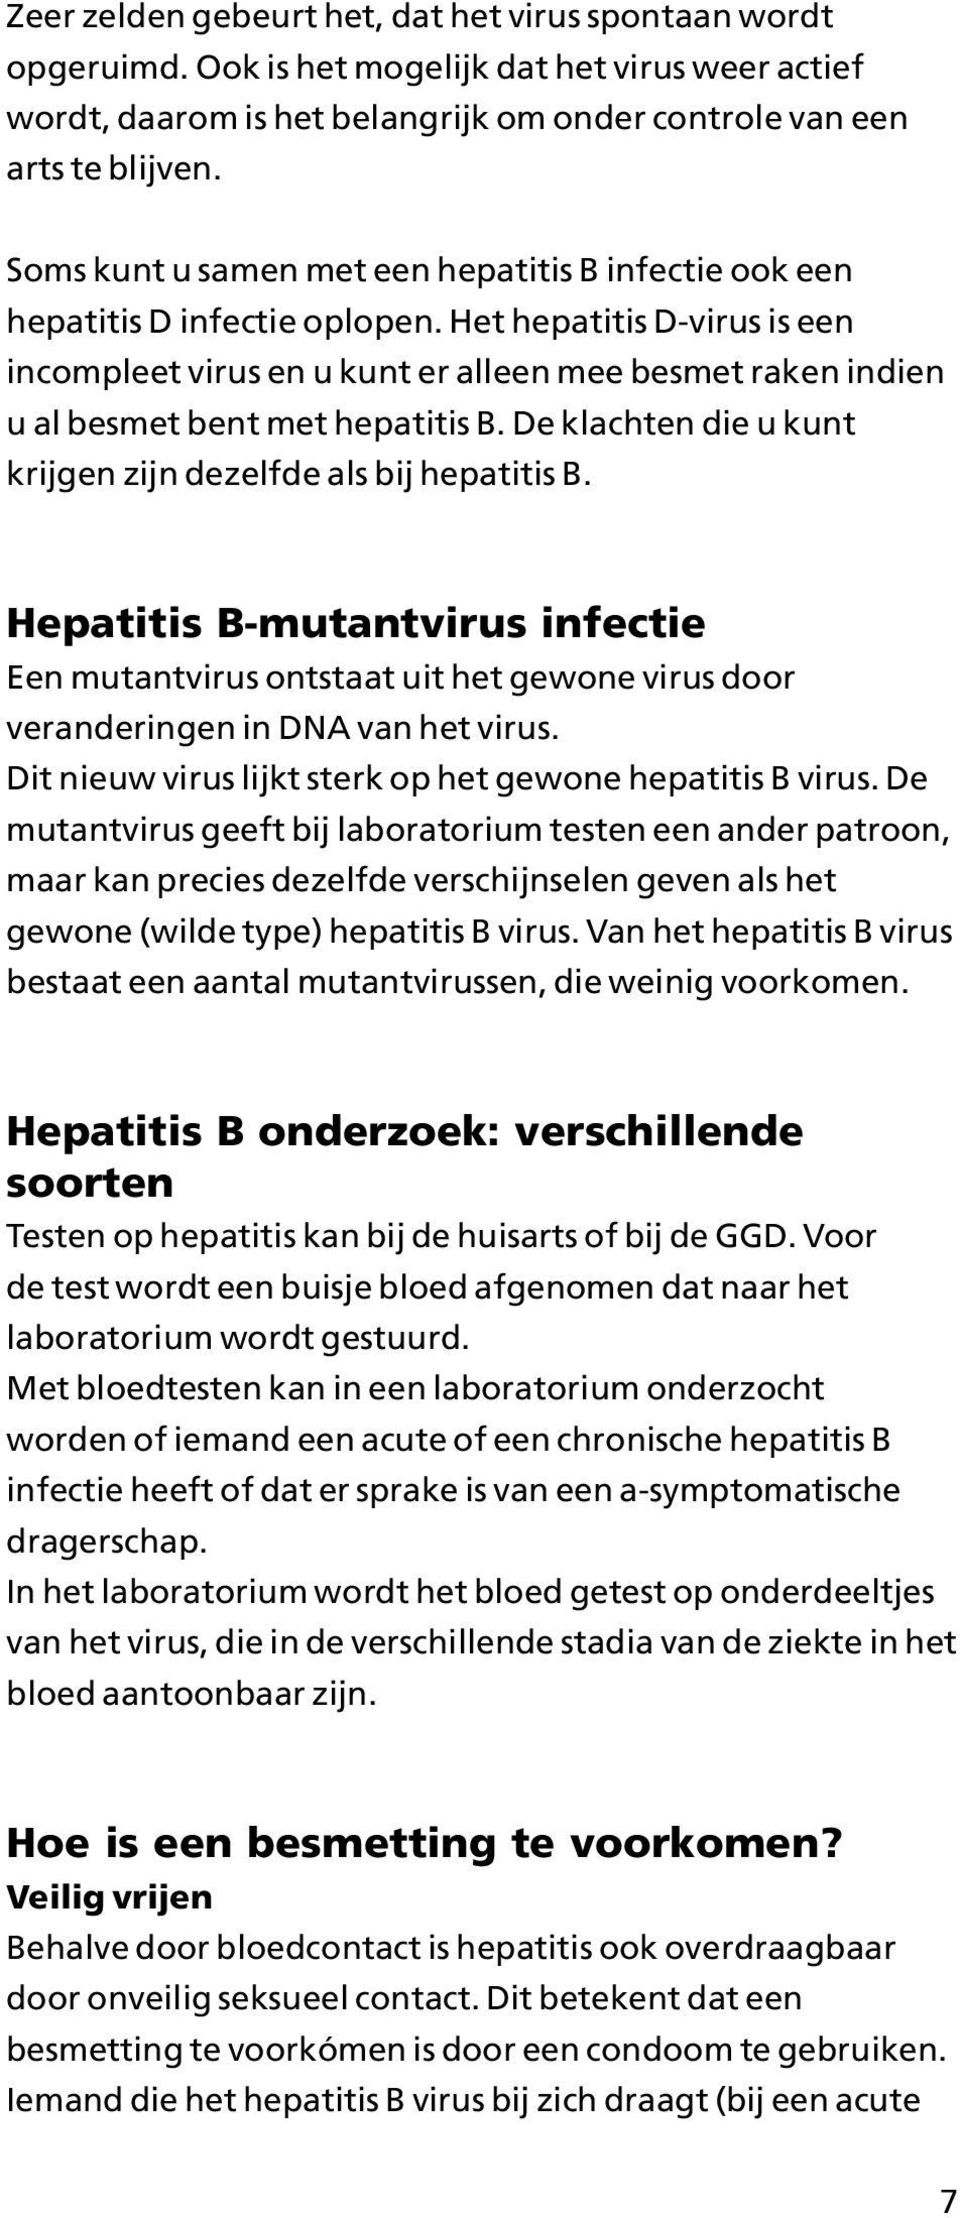 Het hepatitis D-virus is een incompleet virus en u kunt er alleen mee besmet raken indien u al besmet bent met hepatitis B. De klachten die u kunt krijgen zijn dezelfde als bij hepatitis B.